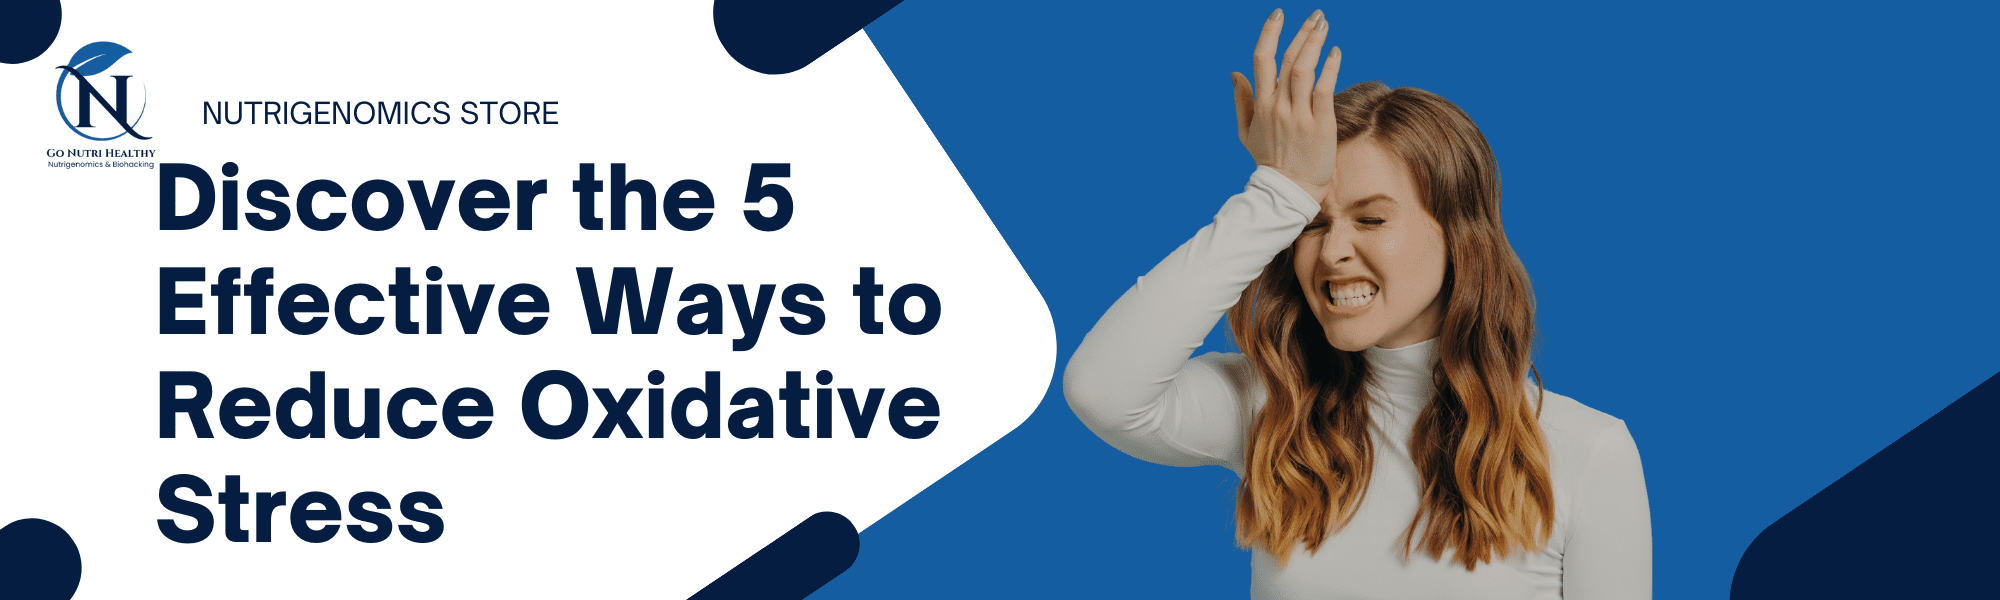 Entdecken Sie die 5 wirksamen Methoden zur Reduzierung von oxidativem Stress